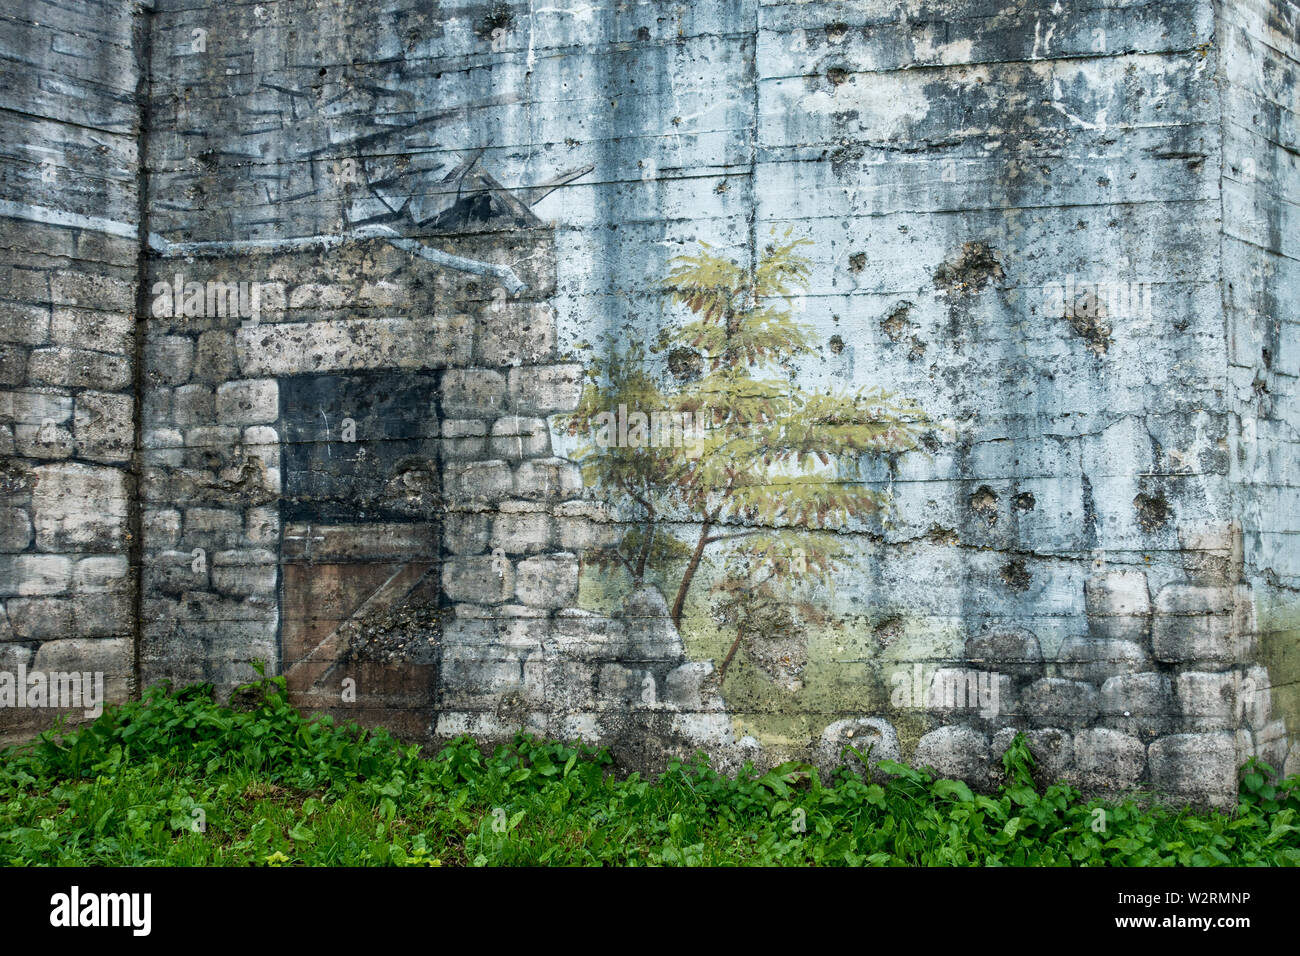 Tarnanstrich auf der Rückseite des Gun casemate/Artillerie Bunker des Zweiten Weltkriegs Batterie d'Azeville Batterie, Teil der Deutschen Atlantic Wall, Normandie, Frankreich Stockfoto